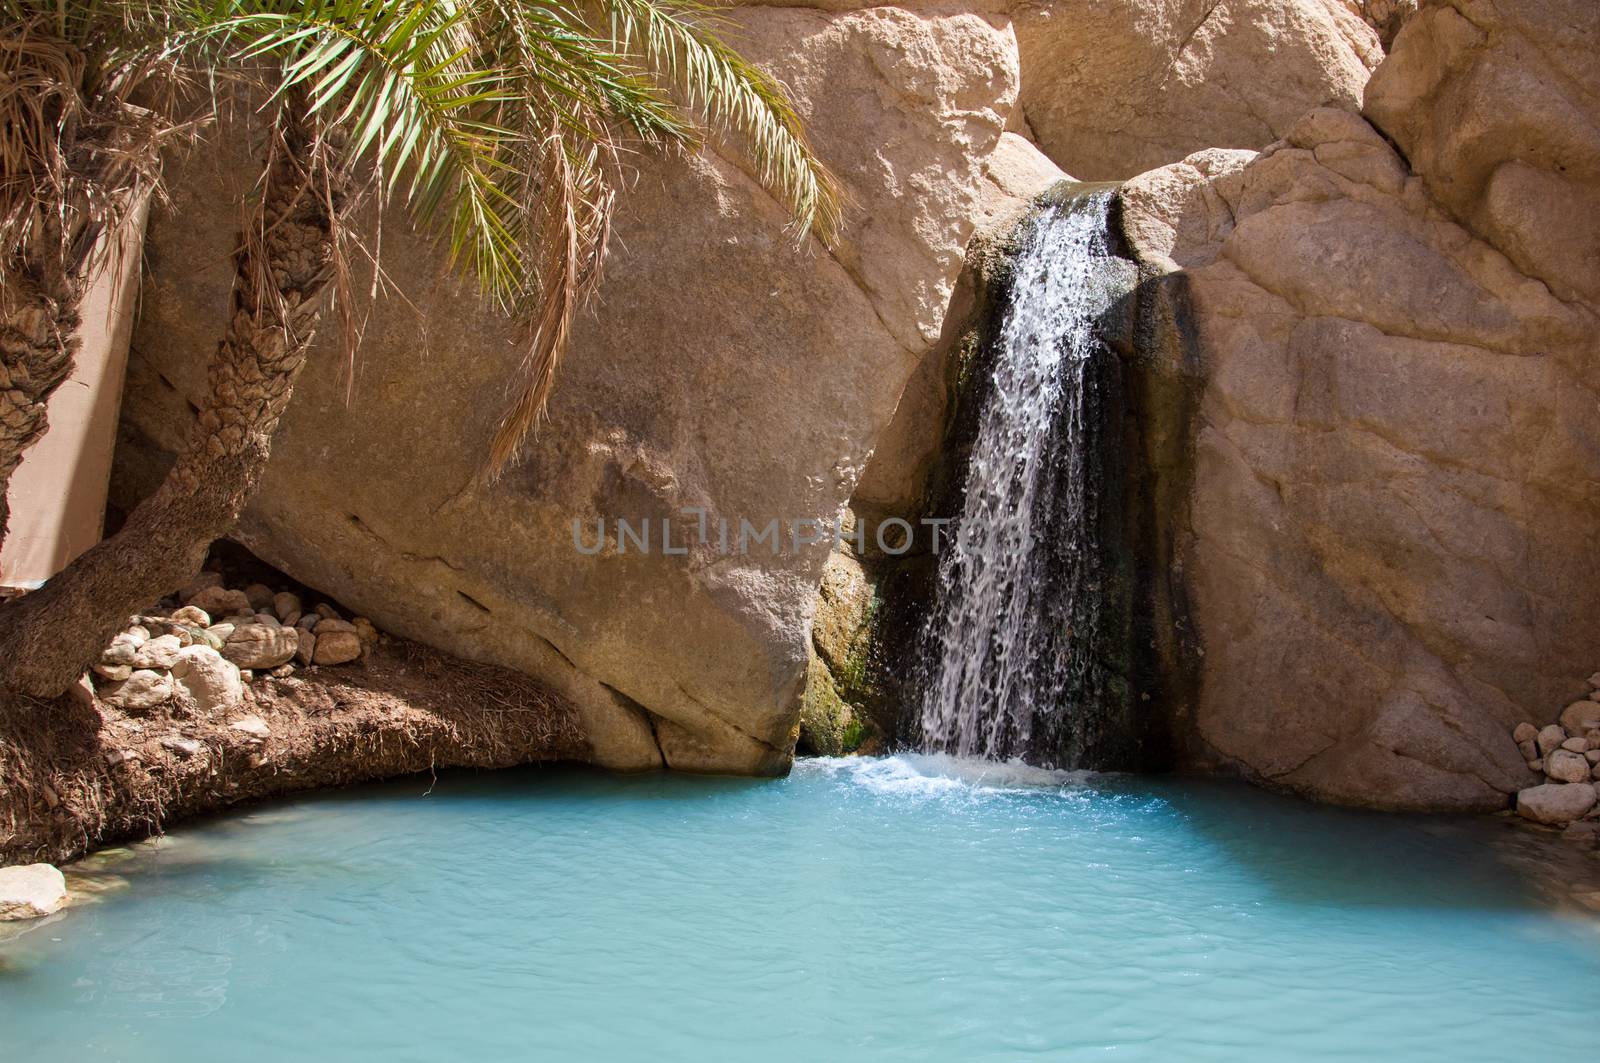 Chebika waterfall in Tunisia